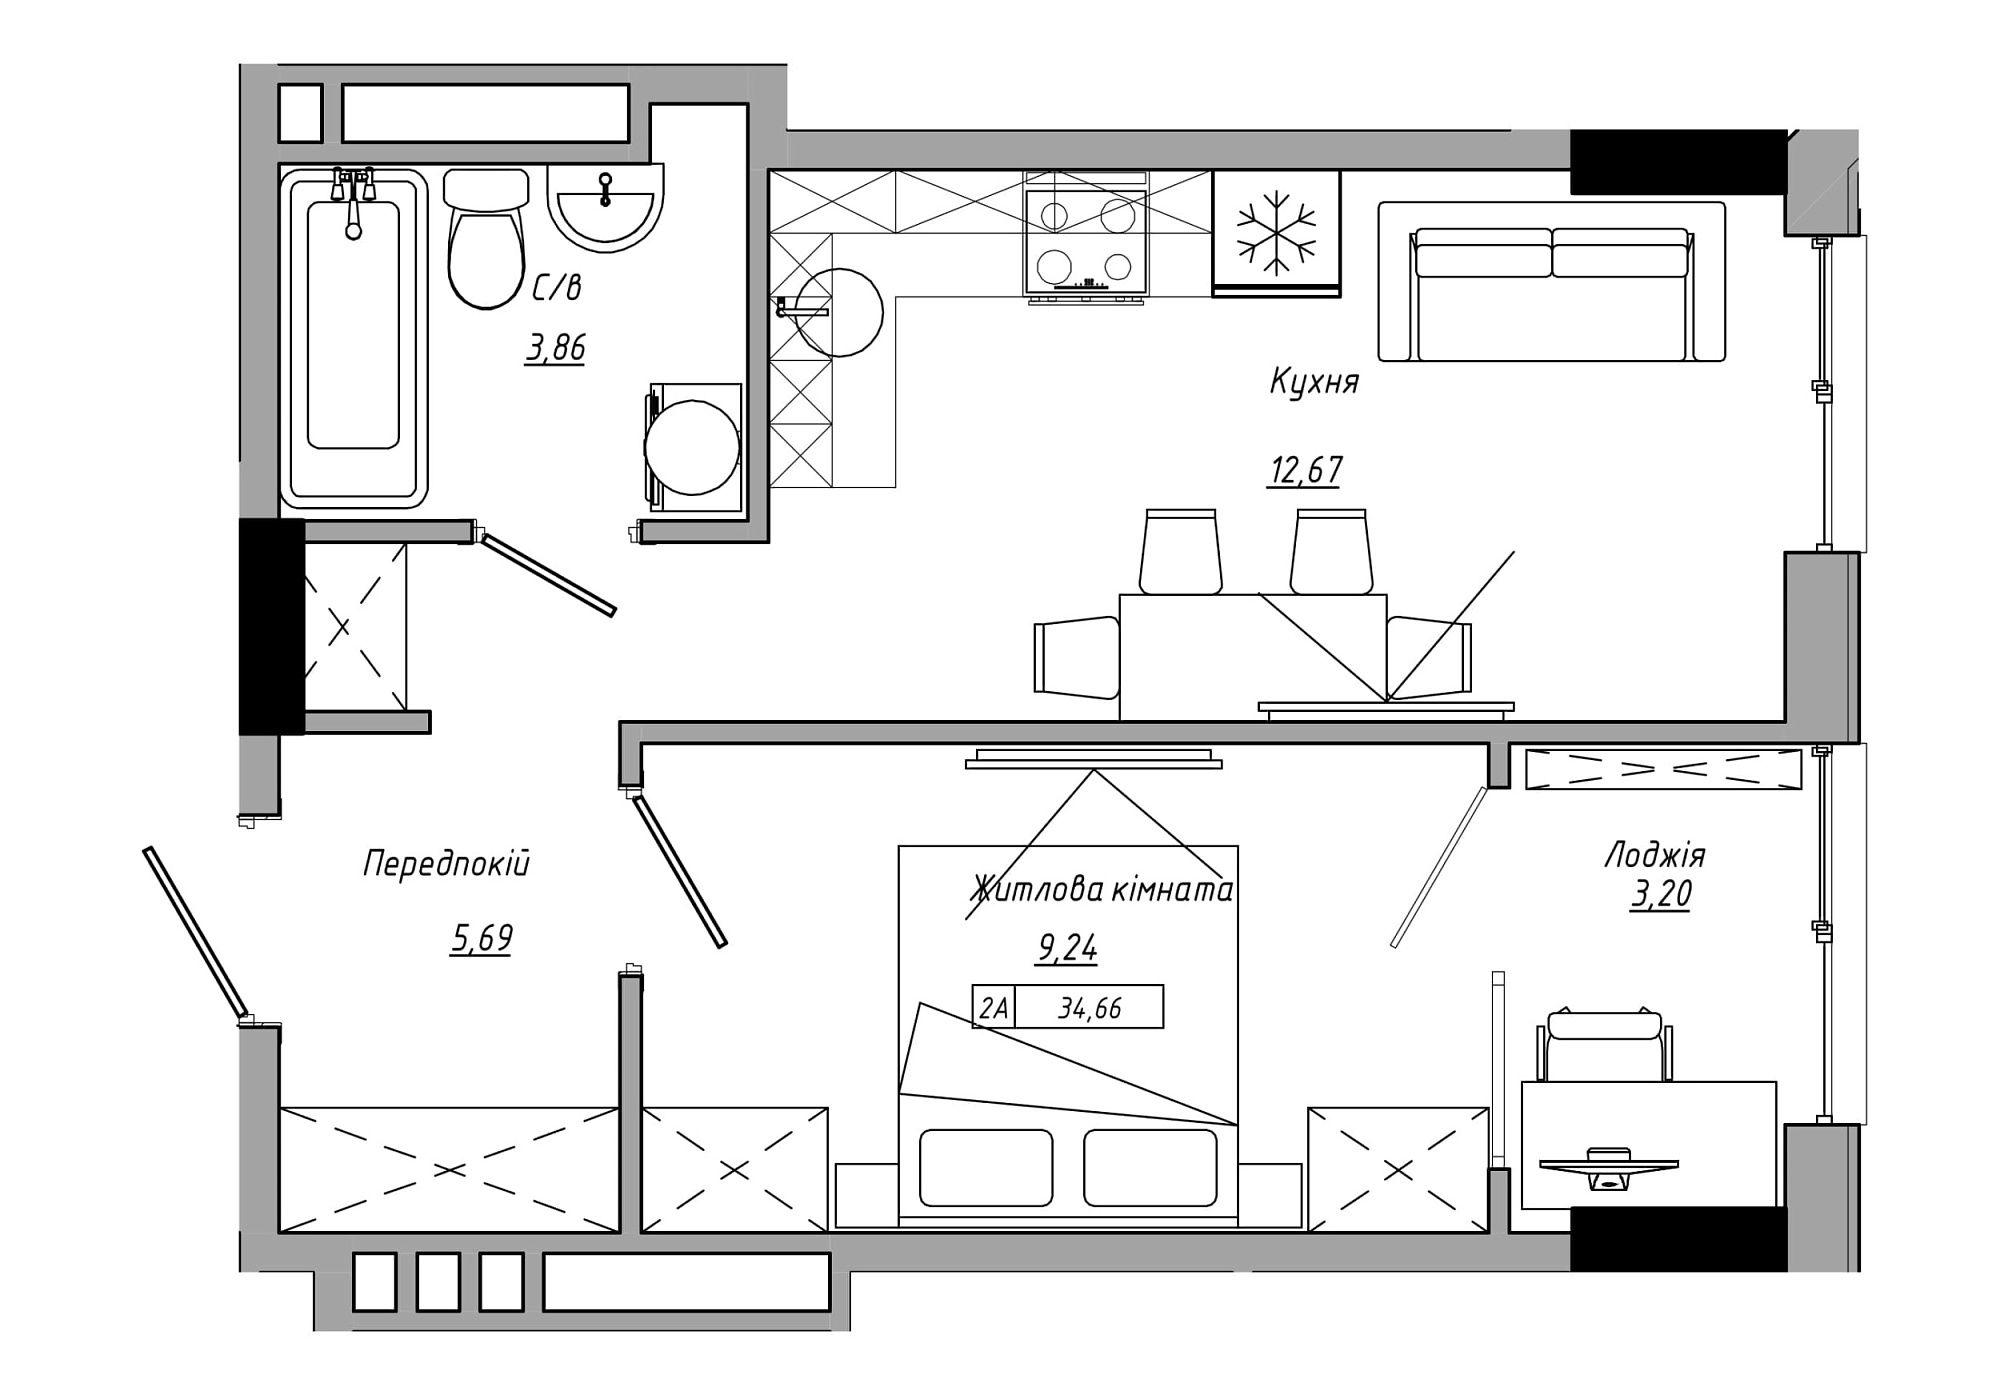 Планування 1-к квартира площею 34.66м2, AB-21-08/00002.